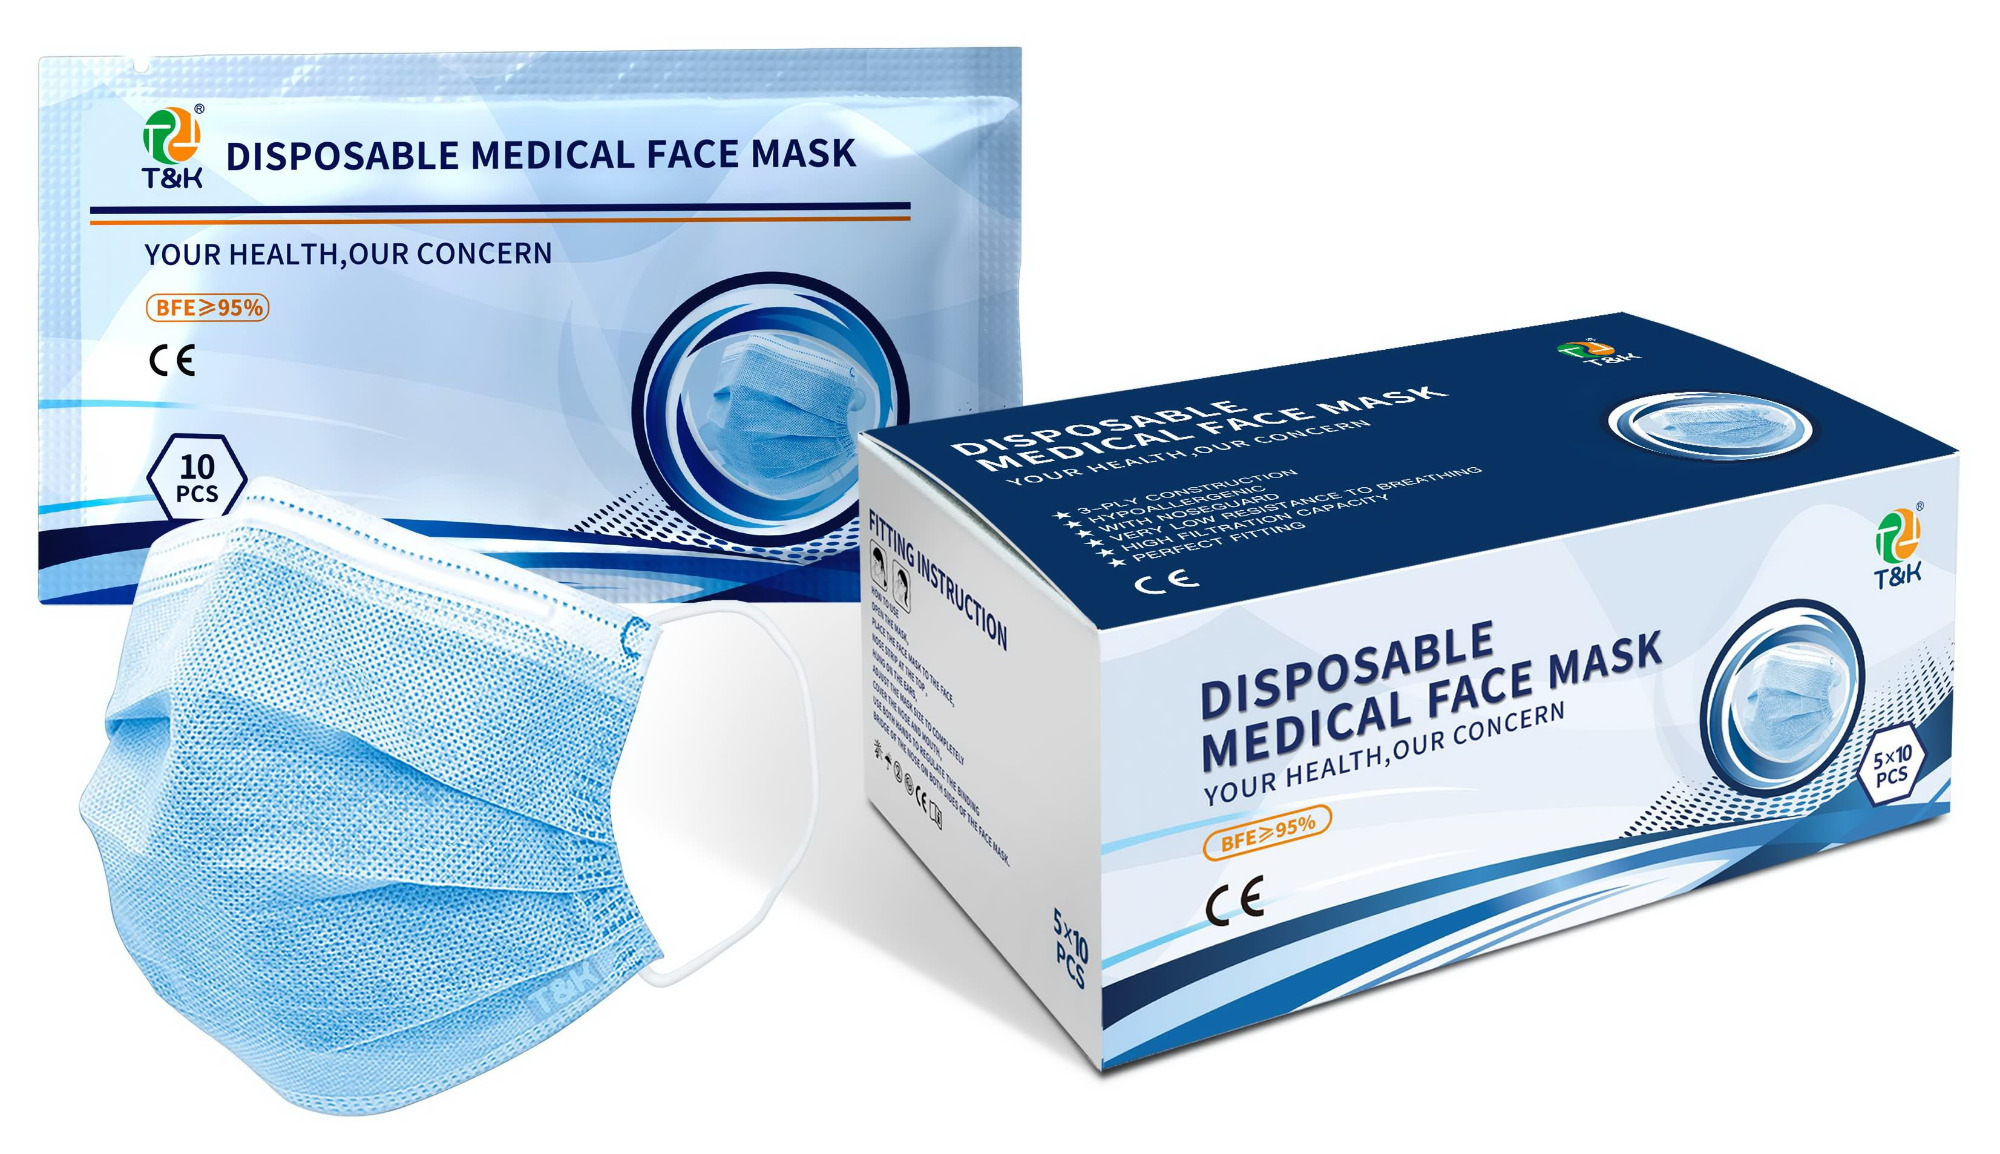 Le mascherine mediche sono contro l'influenza? Quali sono gli standard per le maschere antinfluenzali? - famosa maschera all'ingrosso